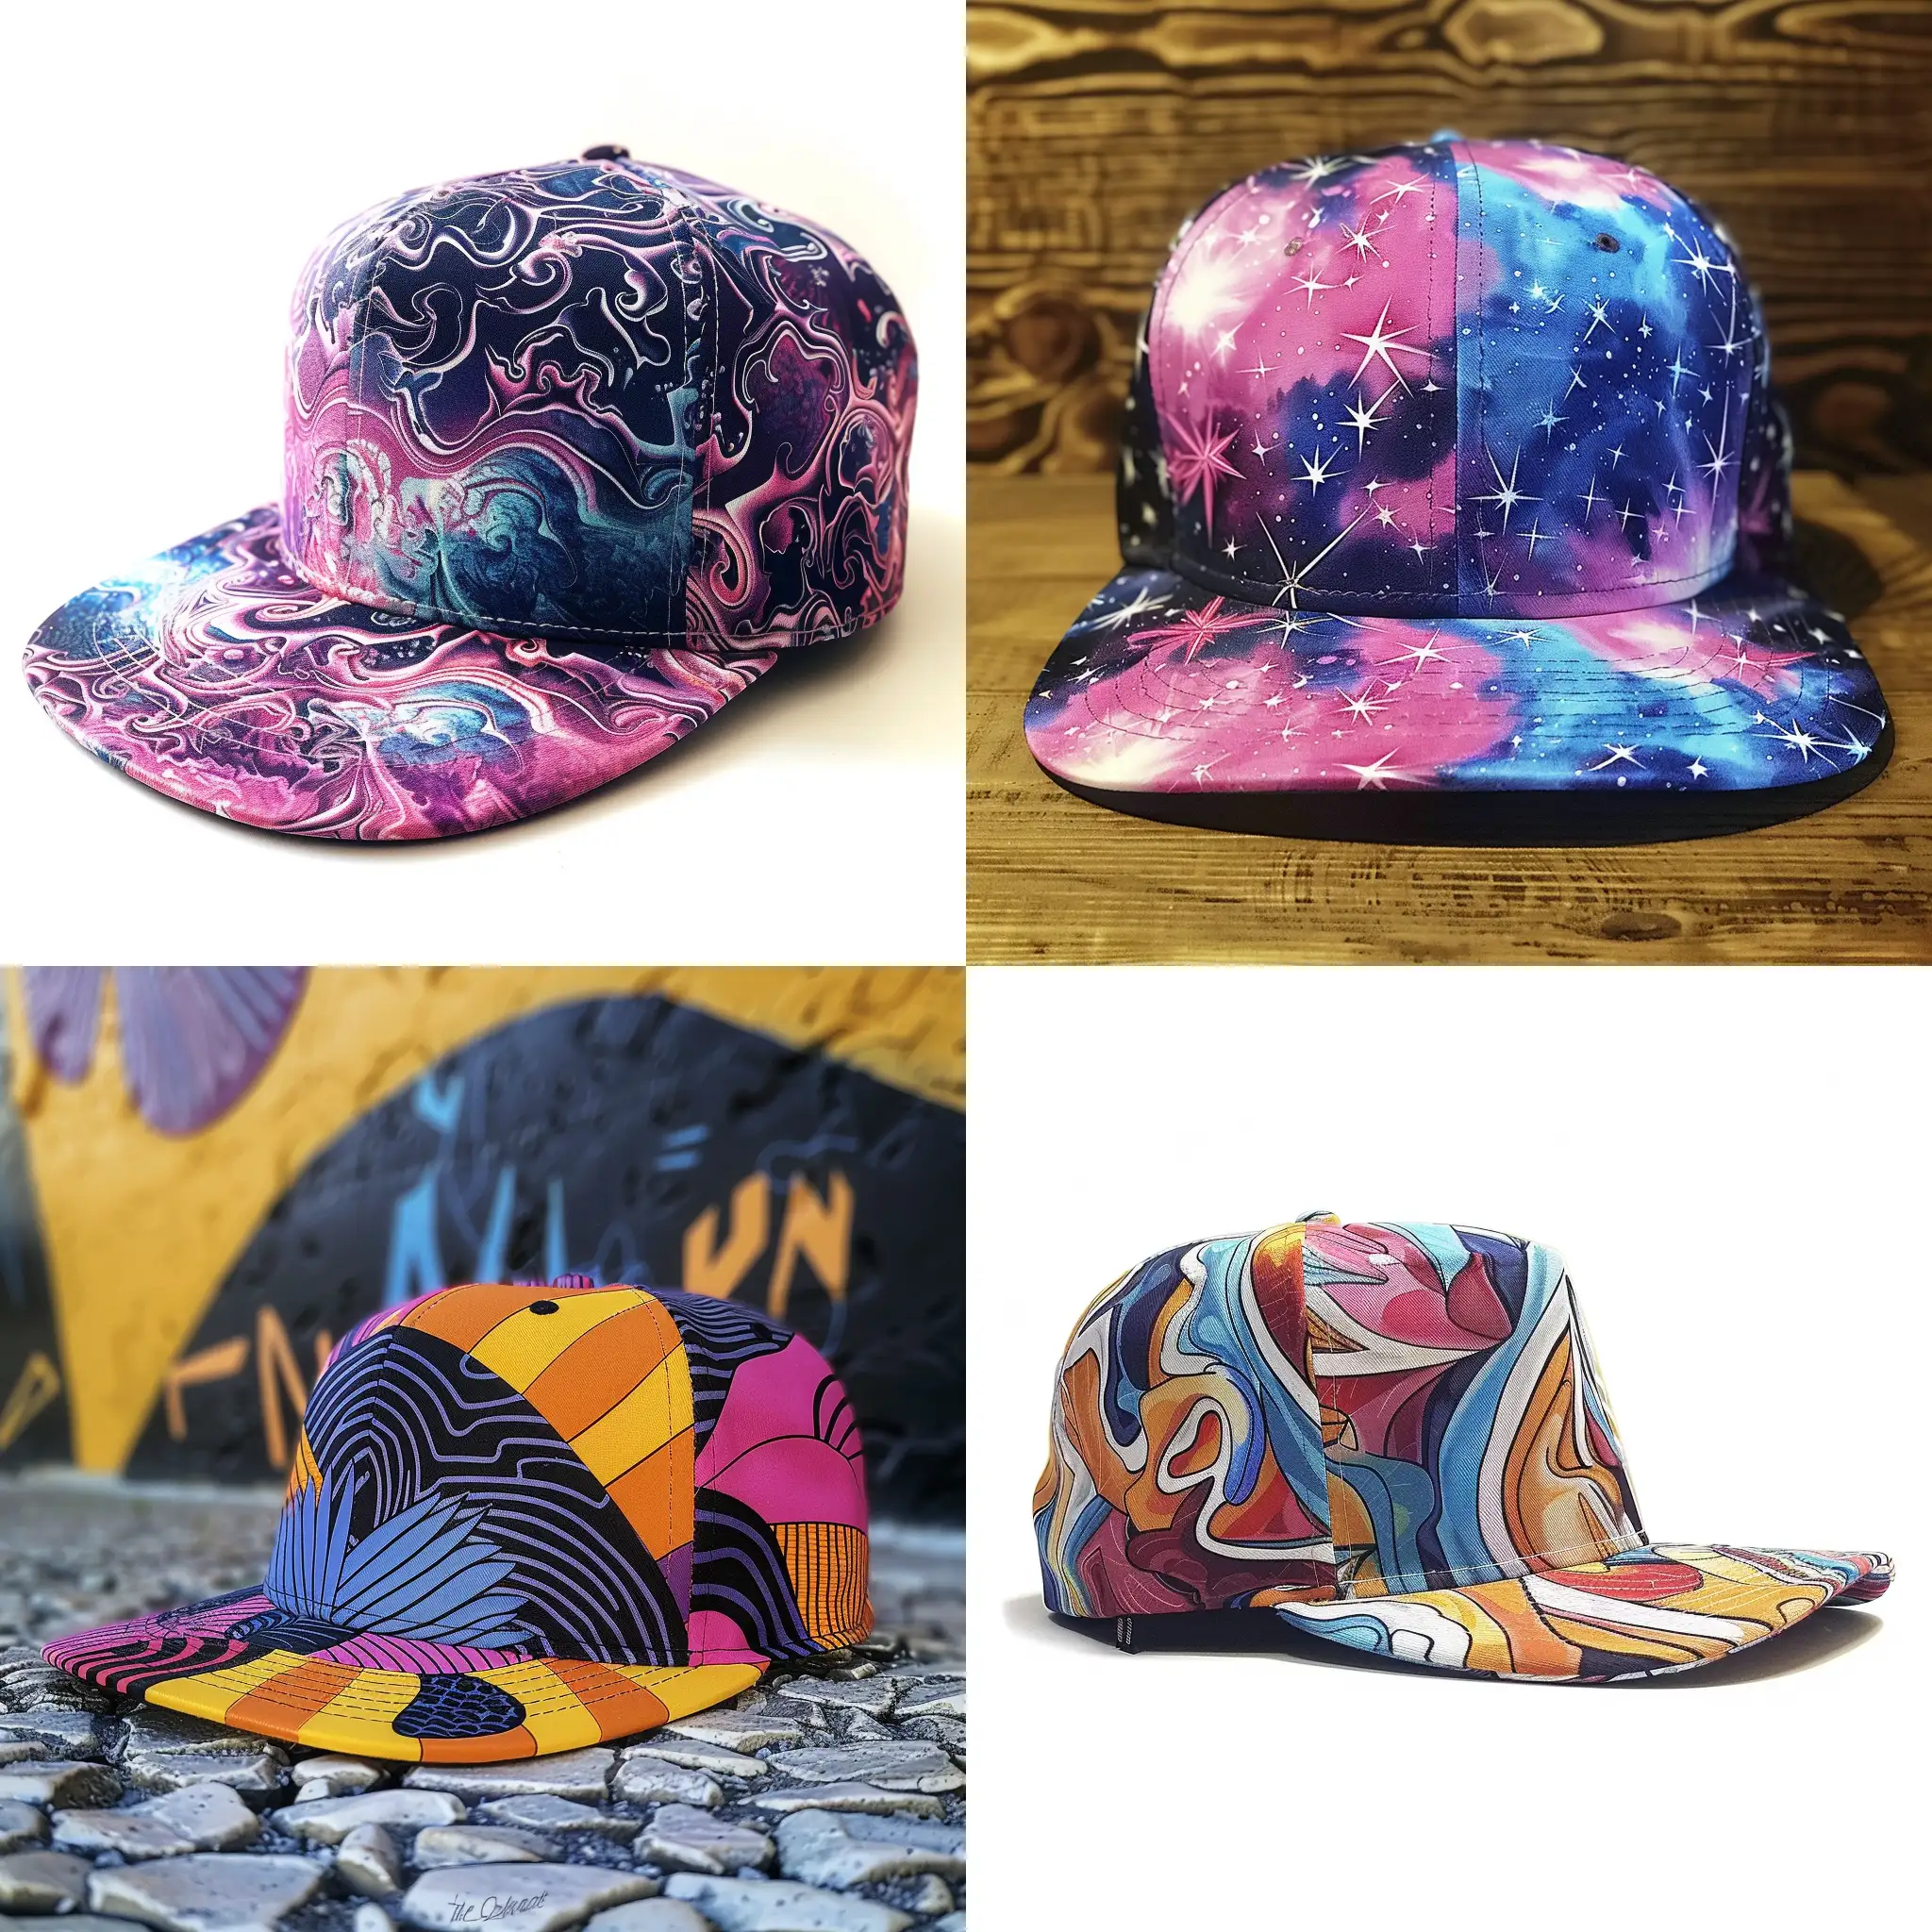 custom cap design, unique cool hat or and snapback